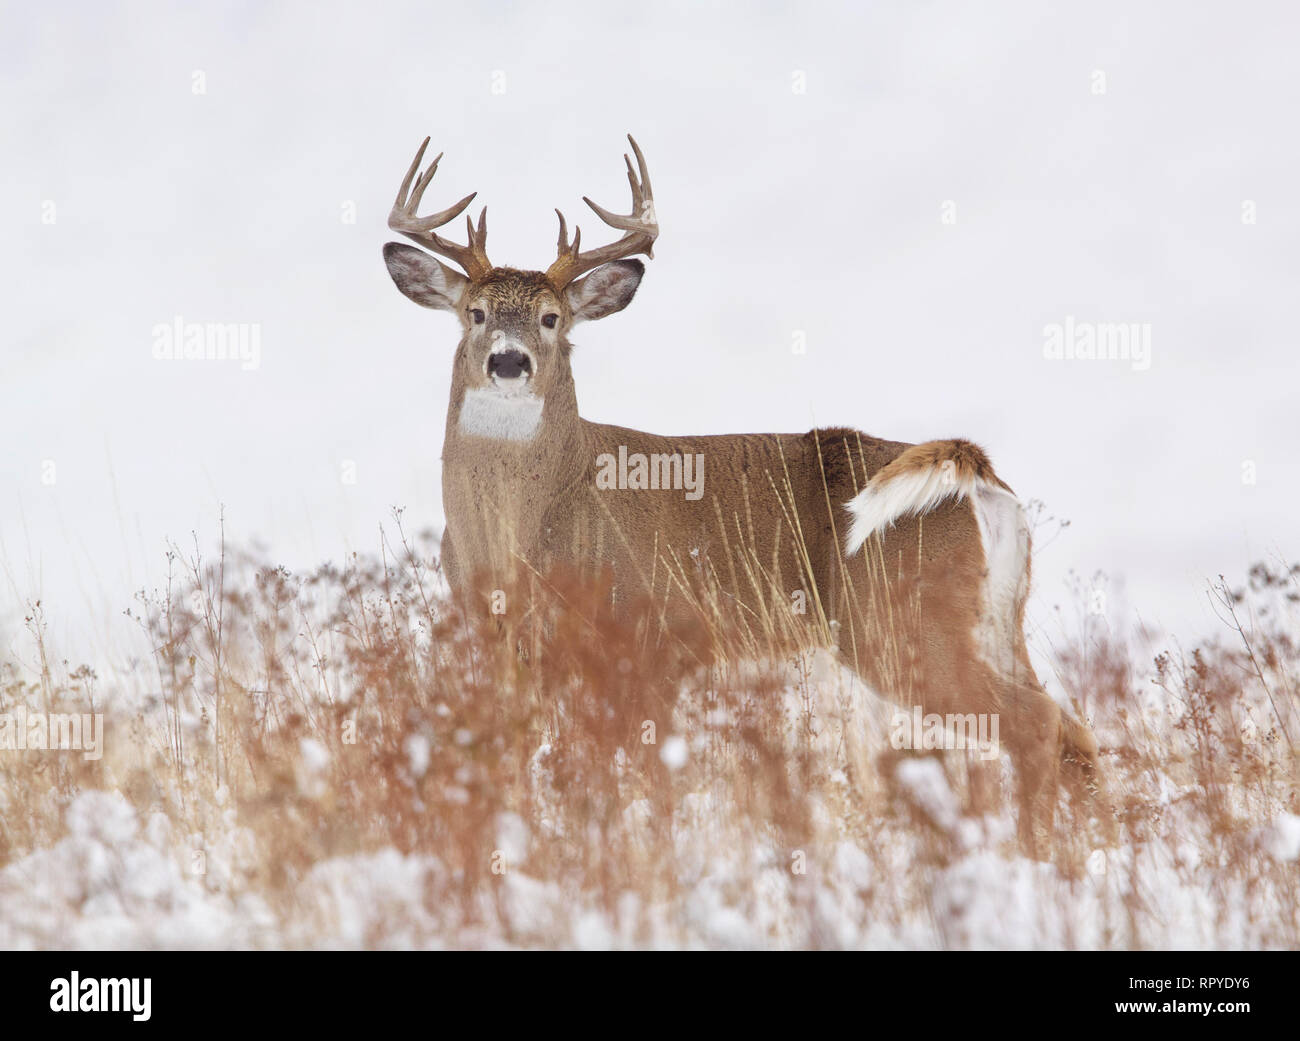 Buck Cerf dans un paysage enneigé midwestern durant la saison de chasse au cerf Banque D'Images